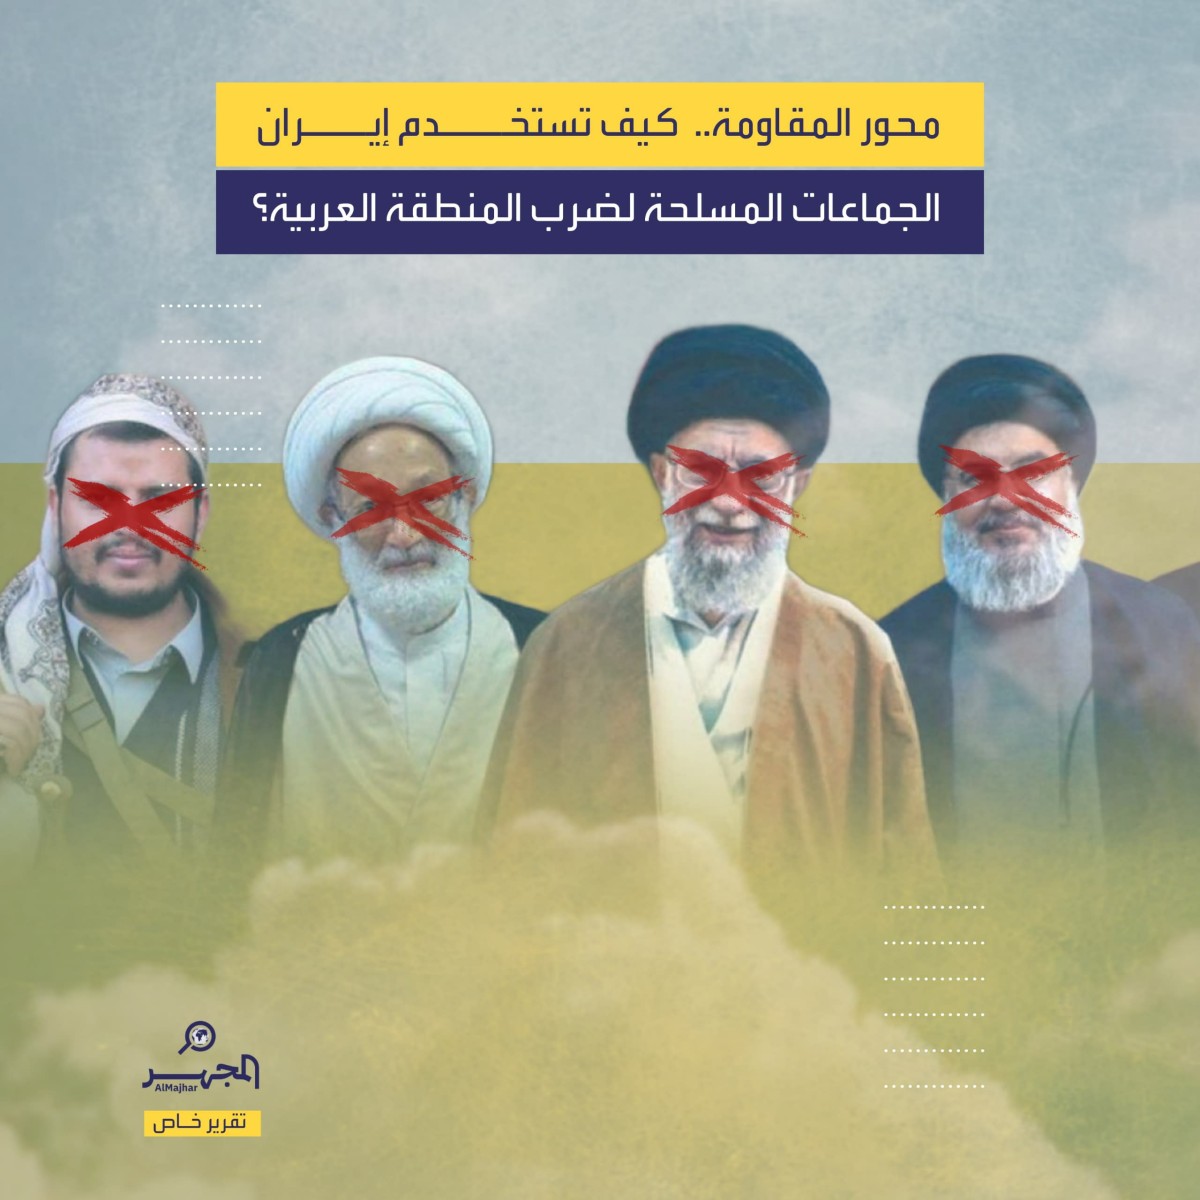 محور المقاومة.. كيف تستخدم إيران الجماعات المسلحة لضرب المنطقة العربية؟ (تقرير خاص)